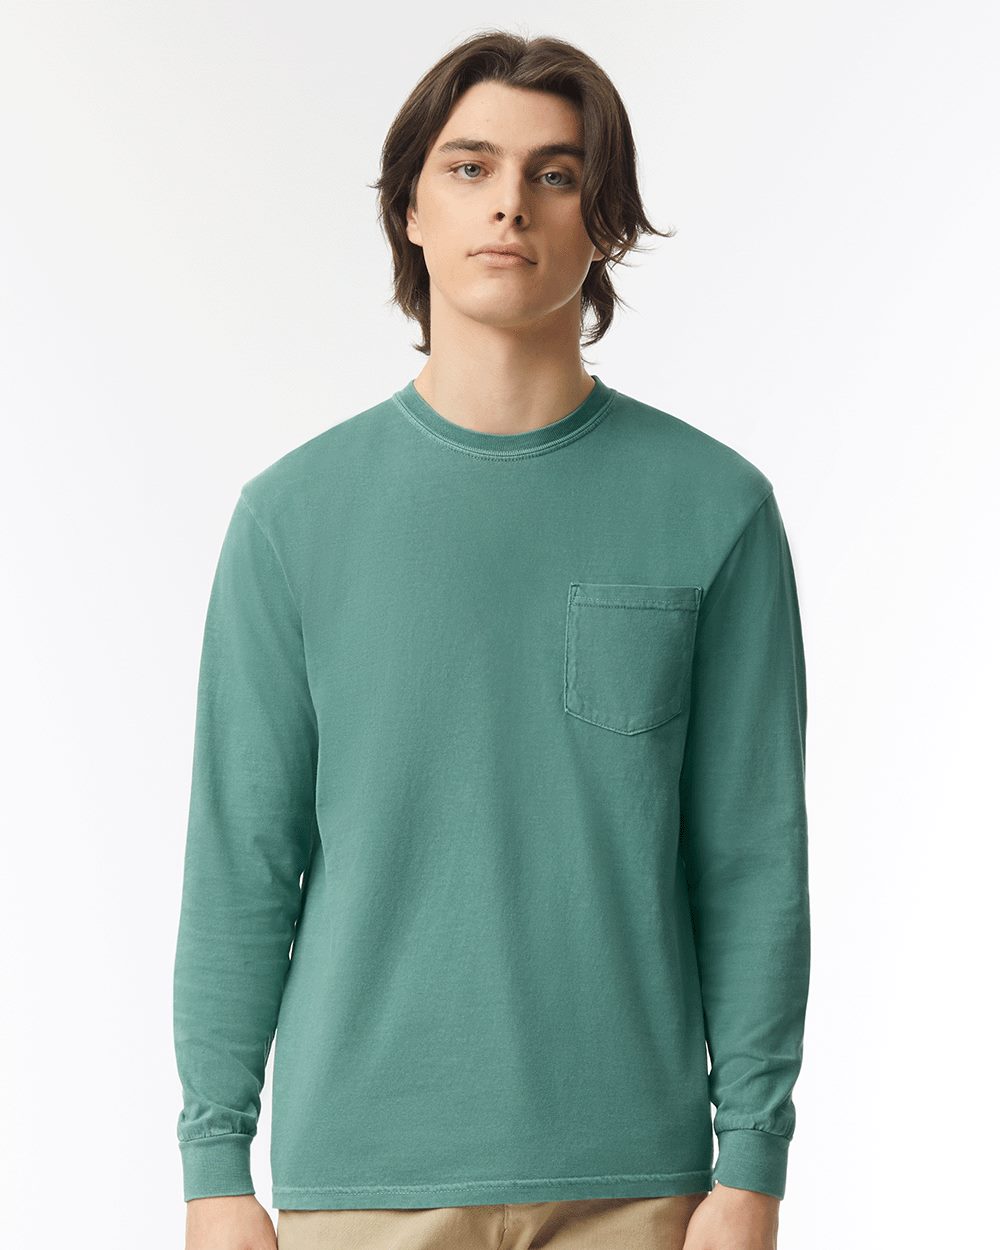 Bra Free Long Sleeved Blouse Green - Sante Wear Inc.